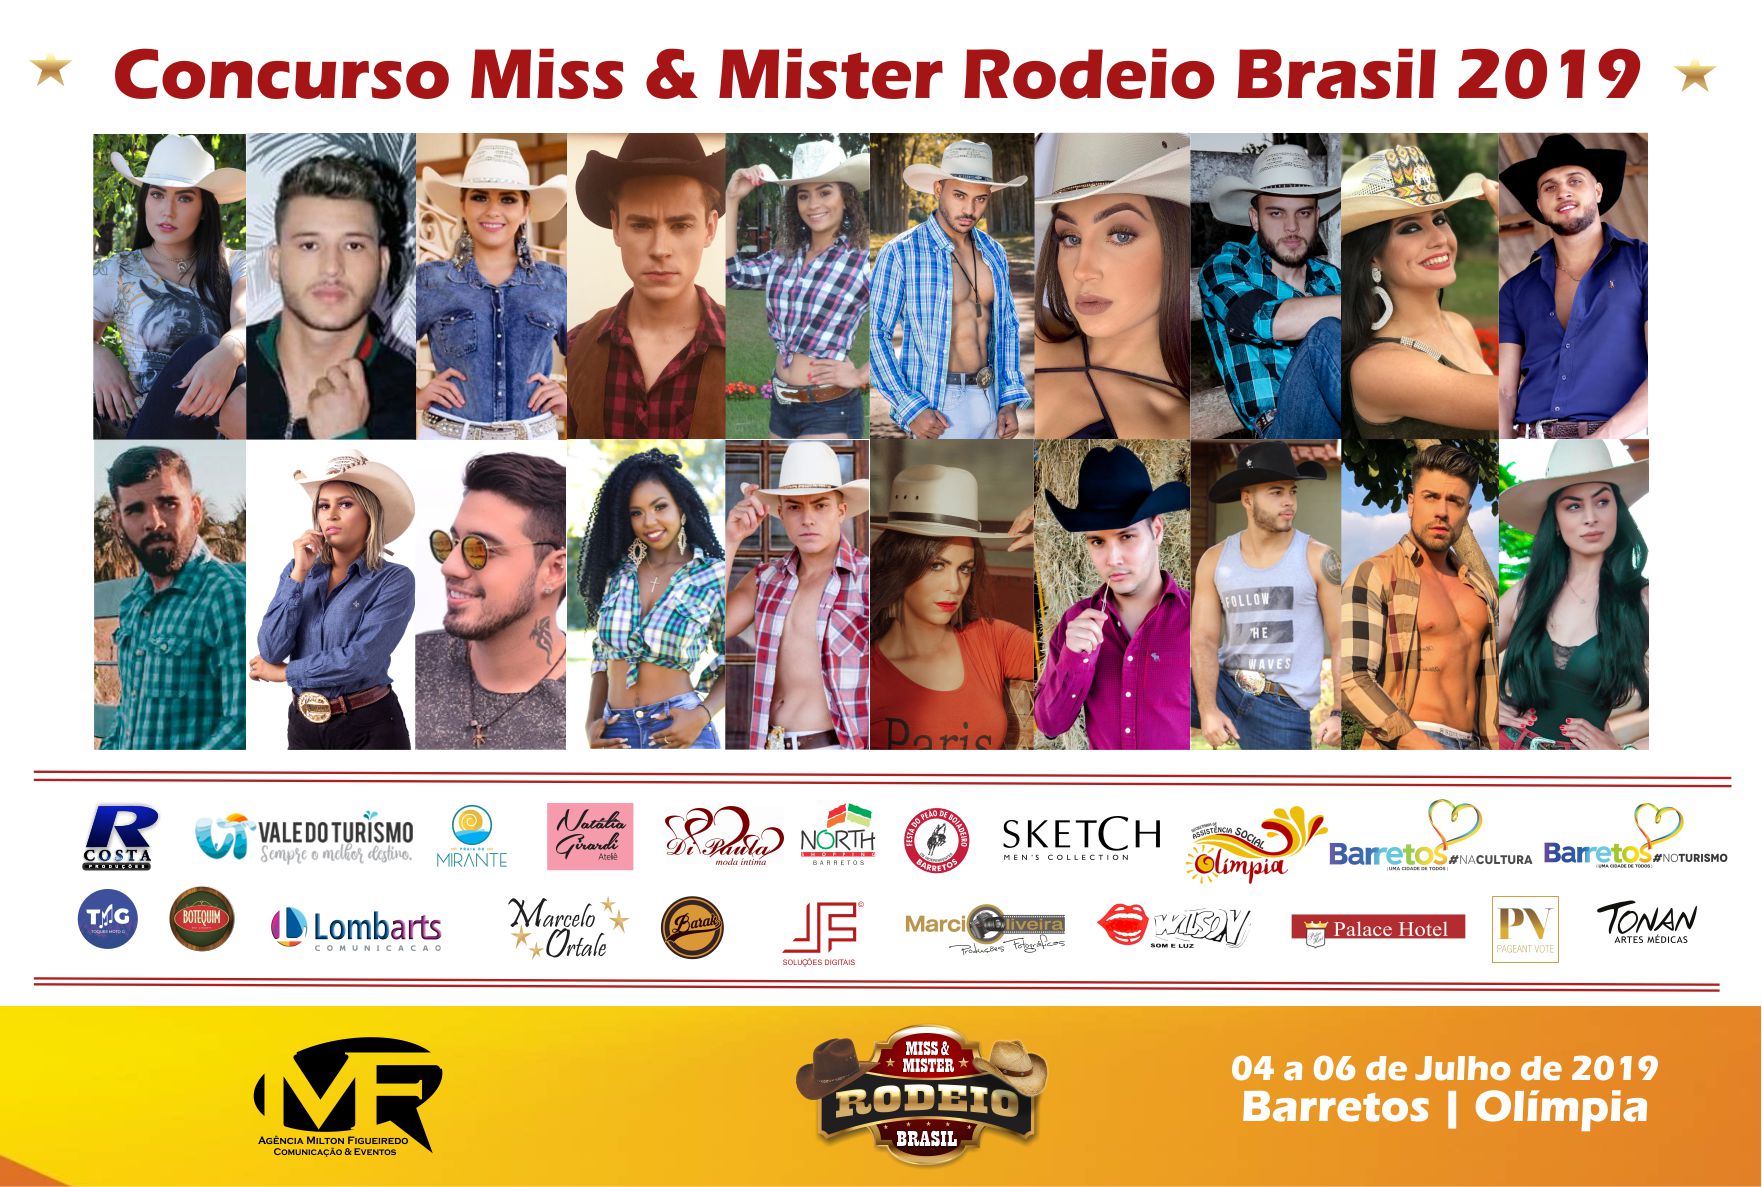 Conheça os participantes do Concurso Miss & Mister Rodeio Brasil 2019